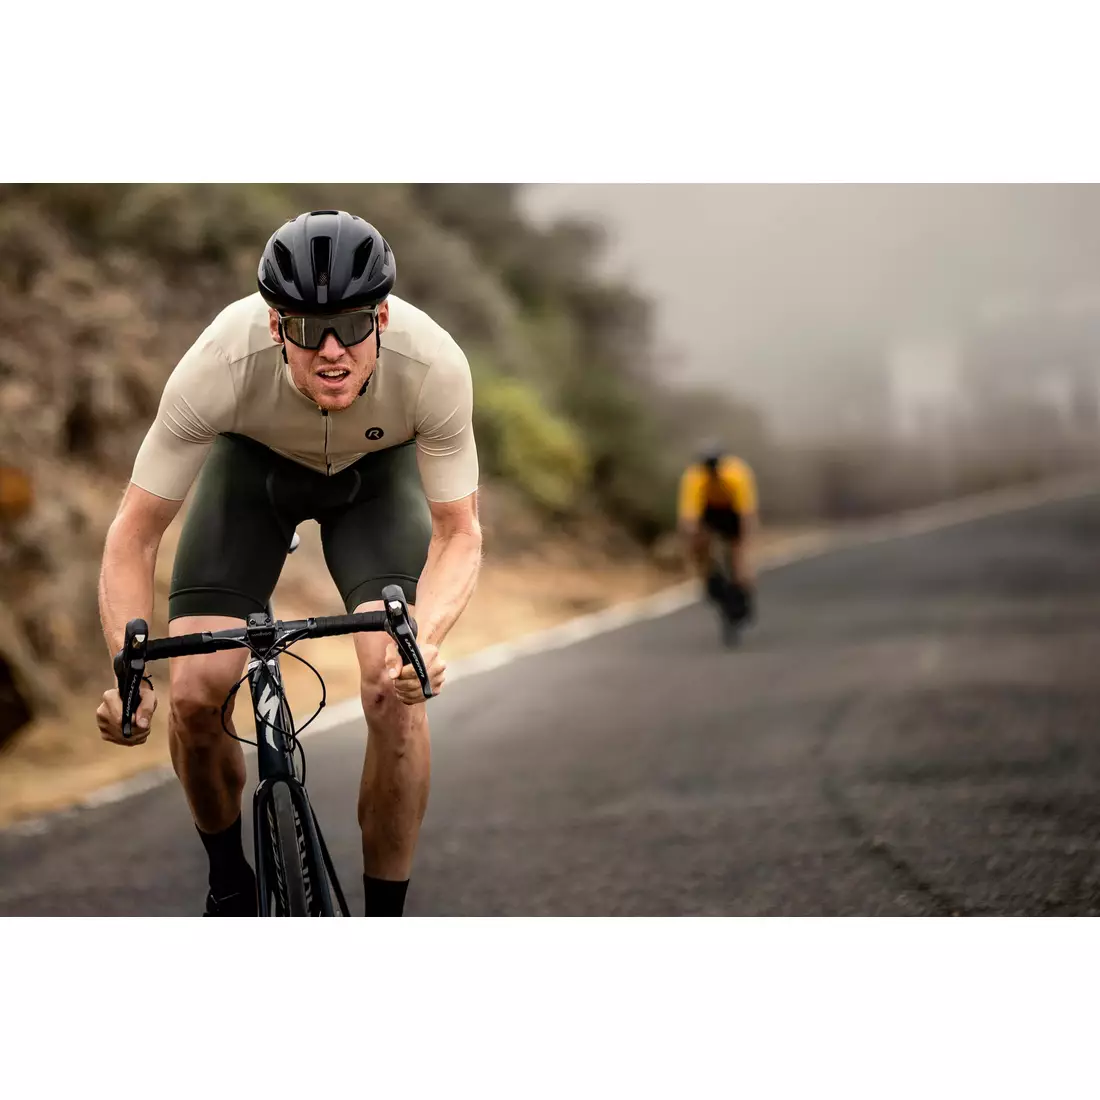 ROGELLI DISTANCE men's cycling jersey, beige